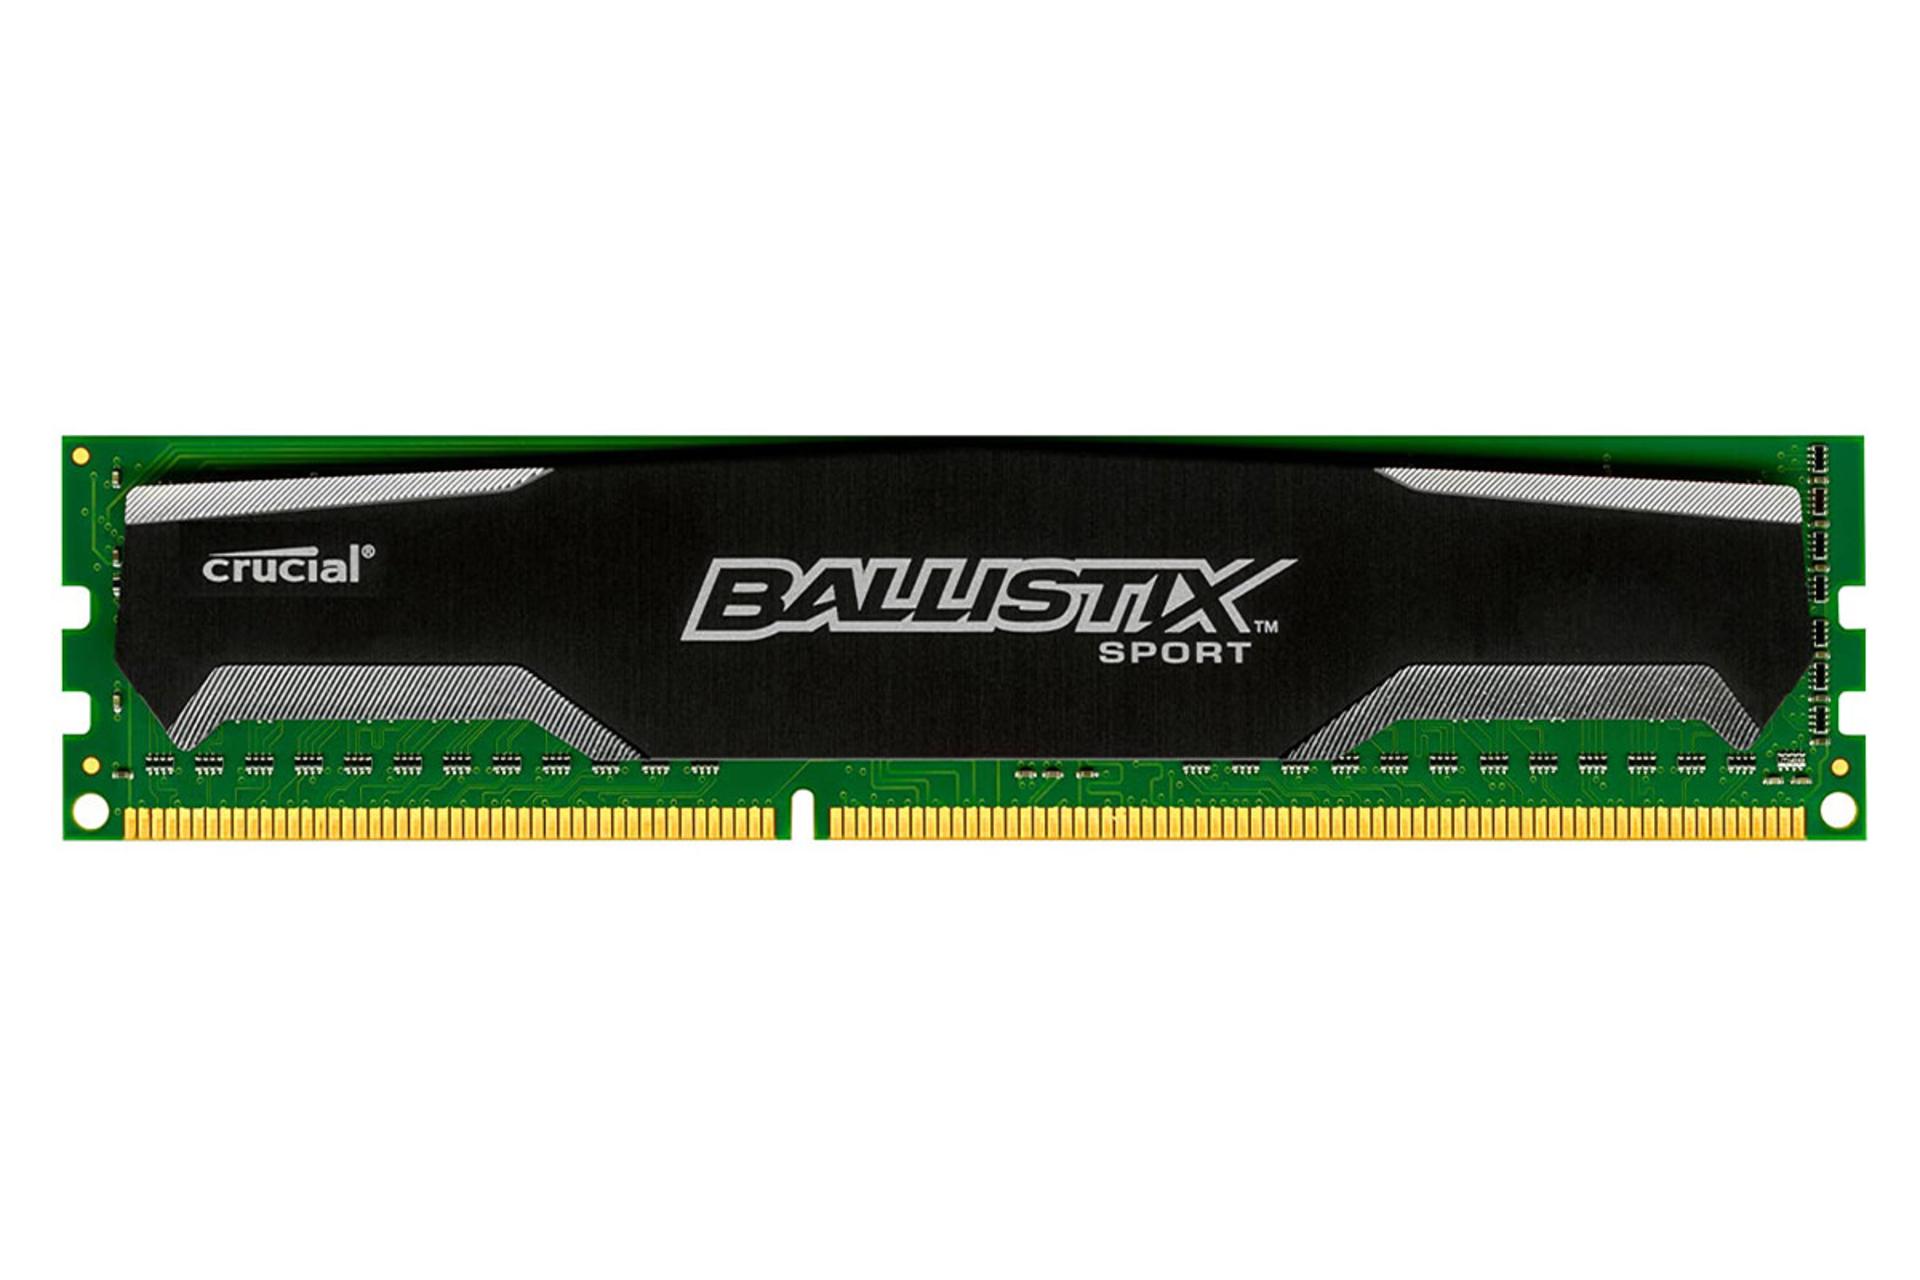 حافظه رم کروشیال Ballistix Sport ظرفیت 4 گیگابایت از نوع DDR3-1333